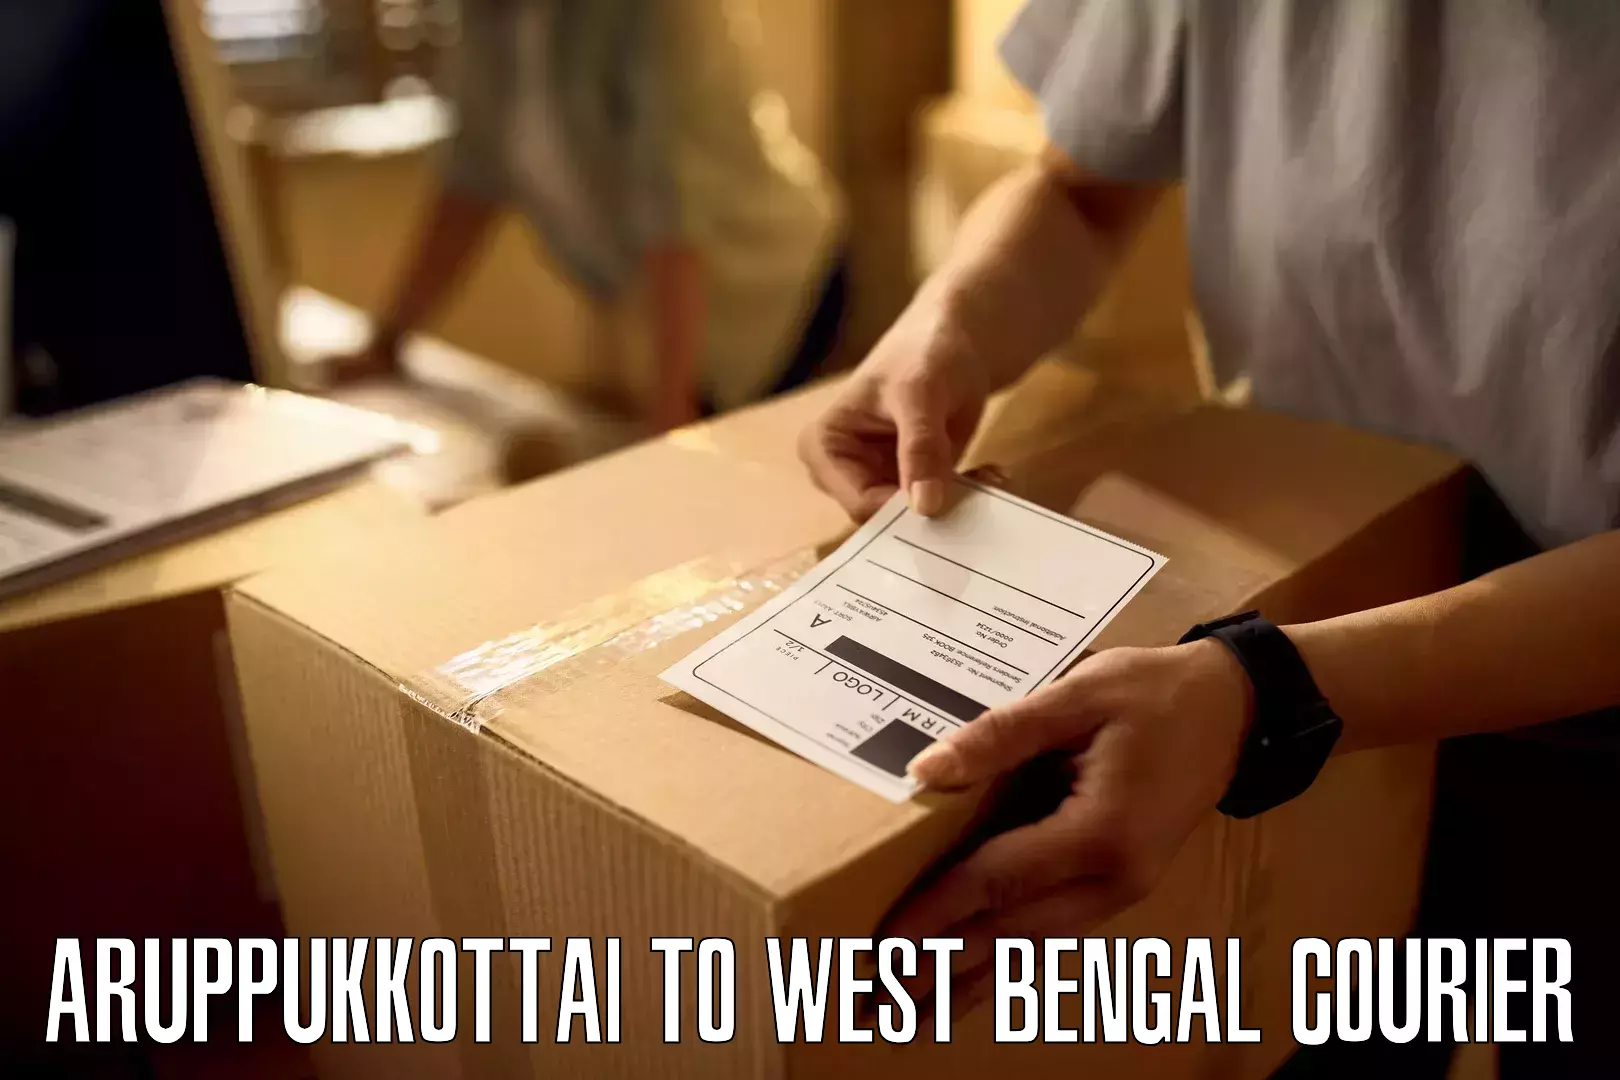 Express logistics service Aruppukkottai to West Bengal